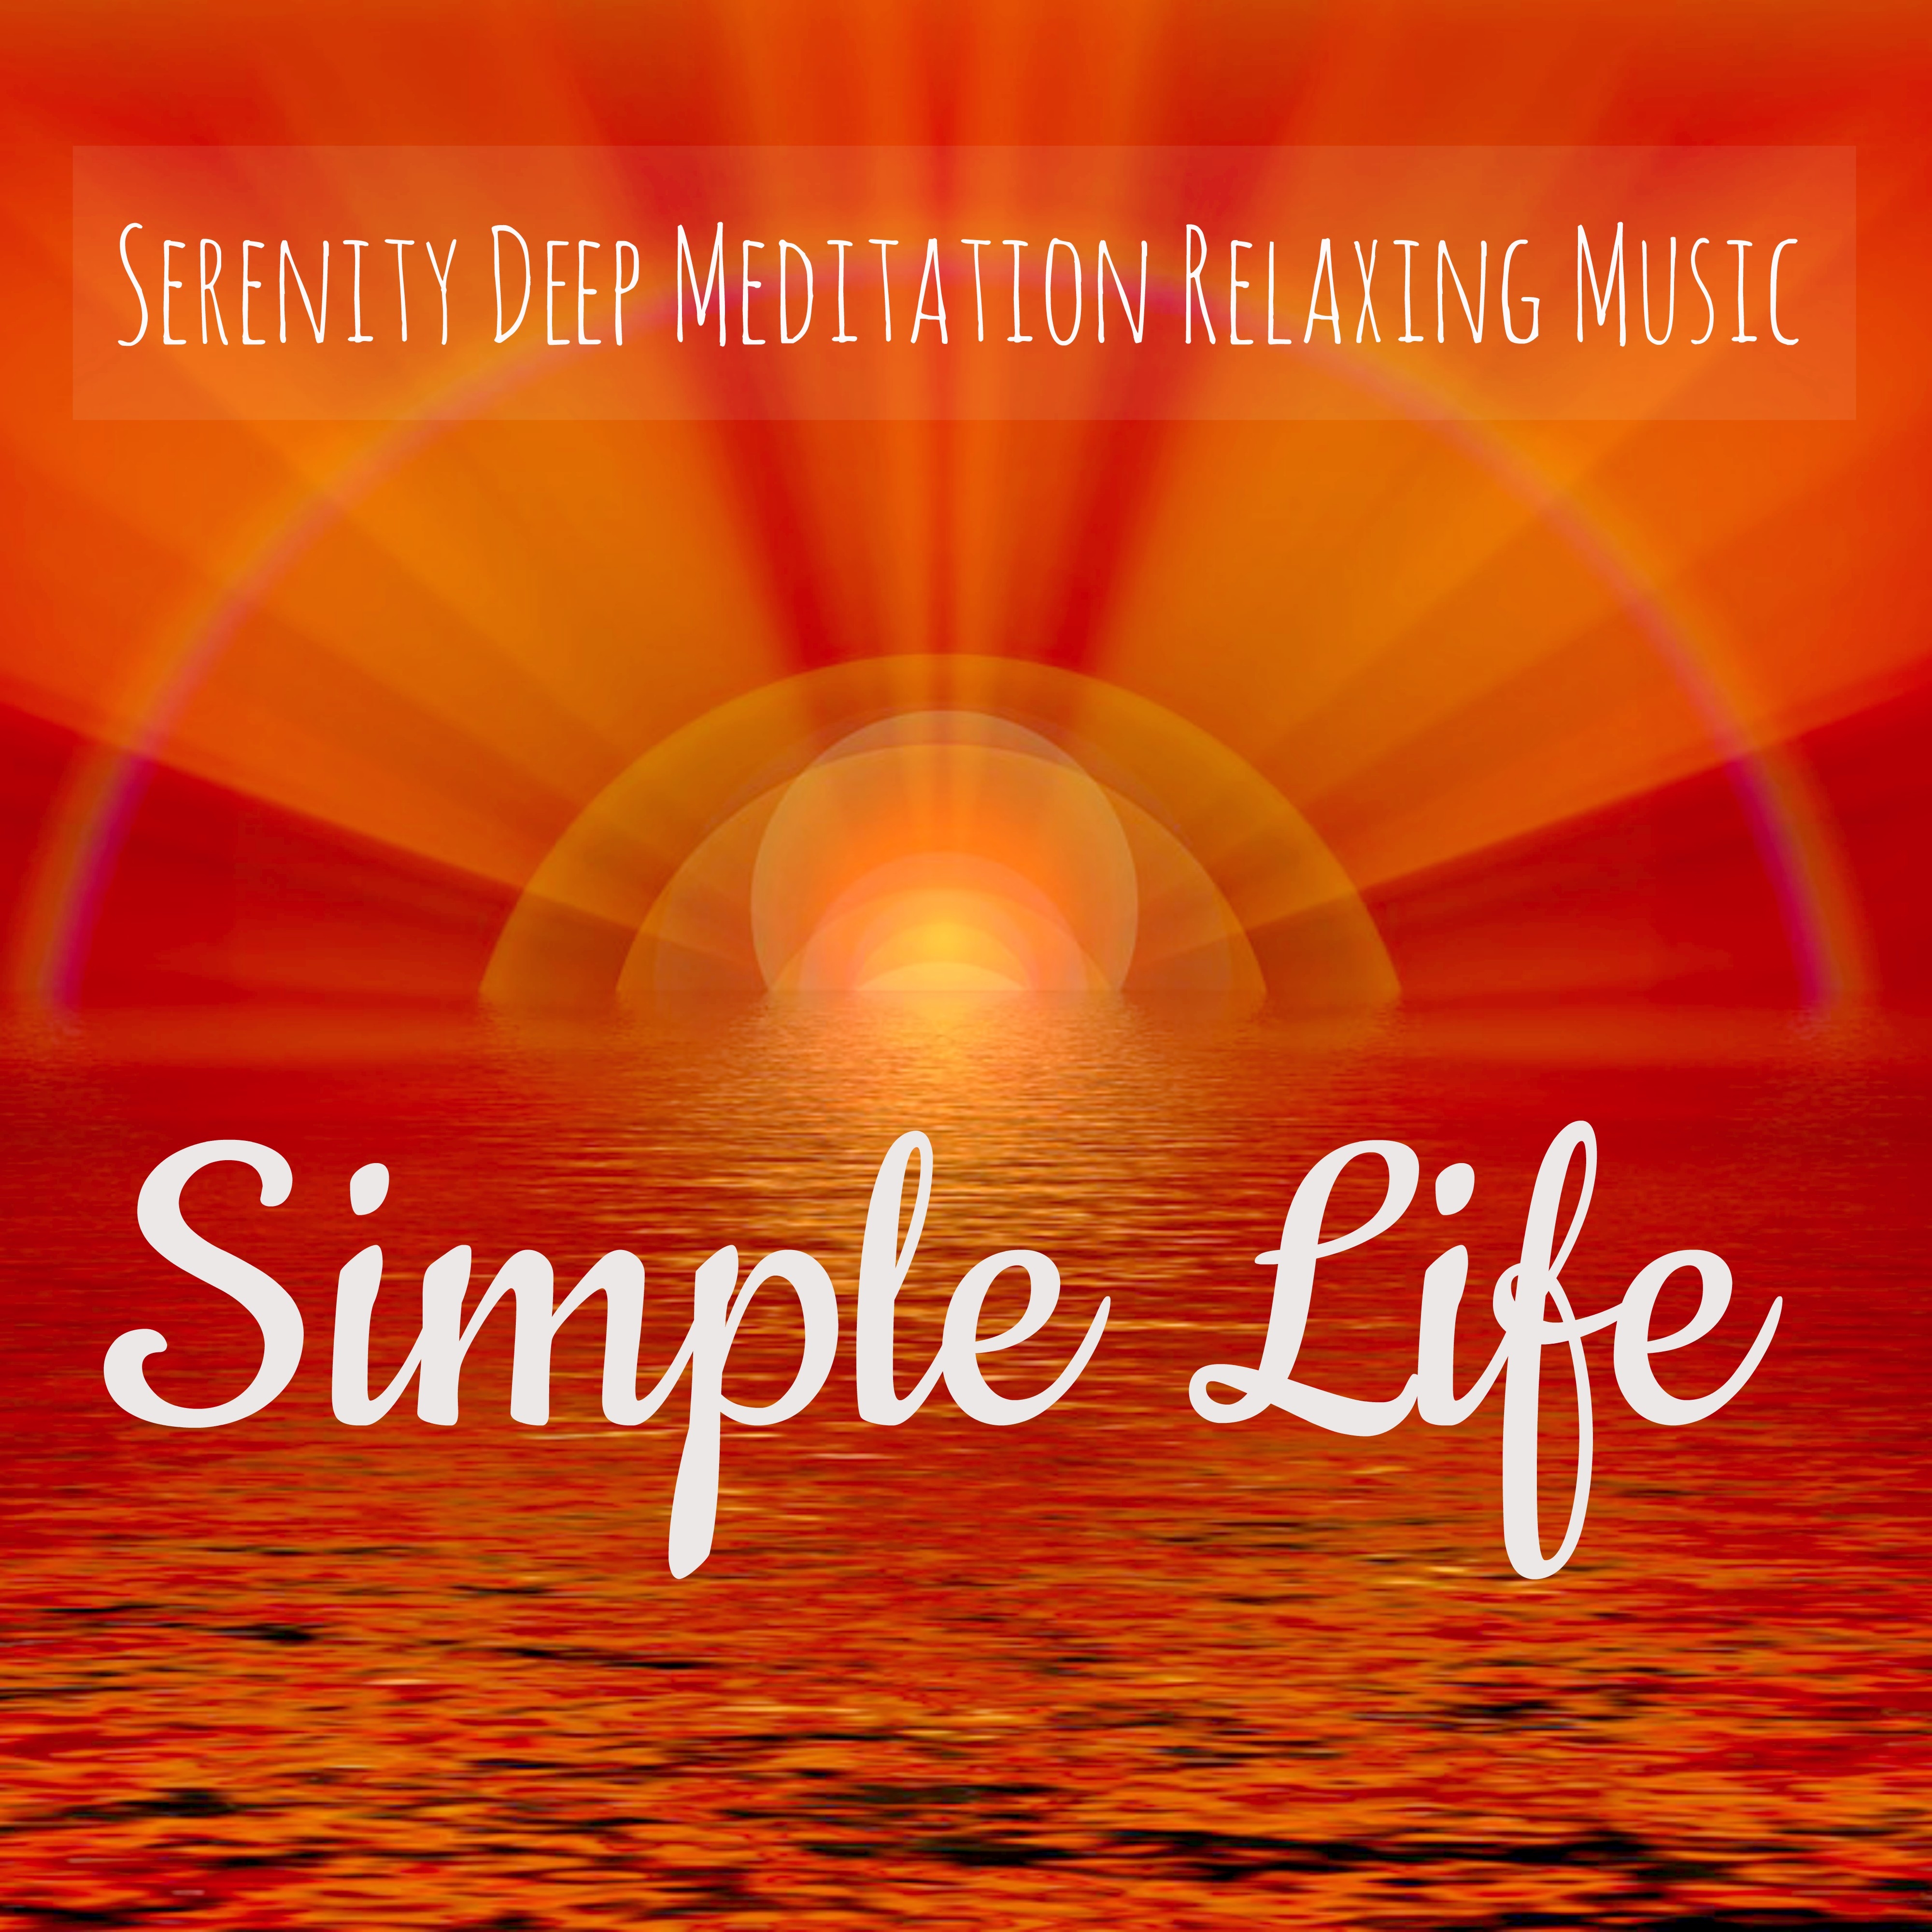 Song for Mindfulness Meditation